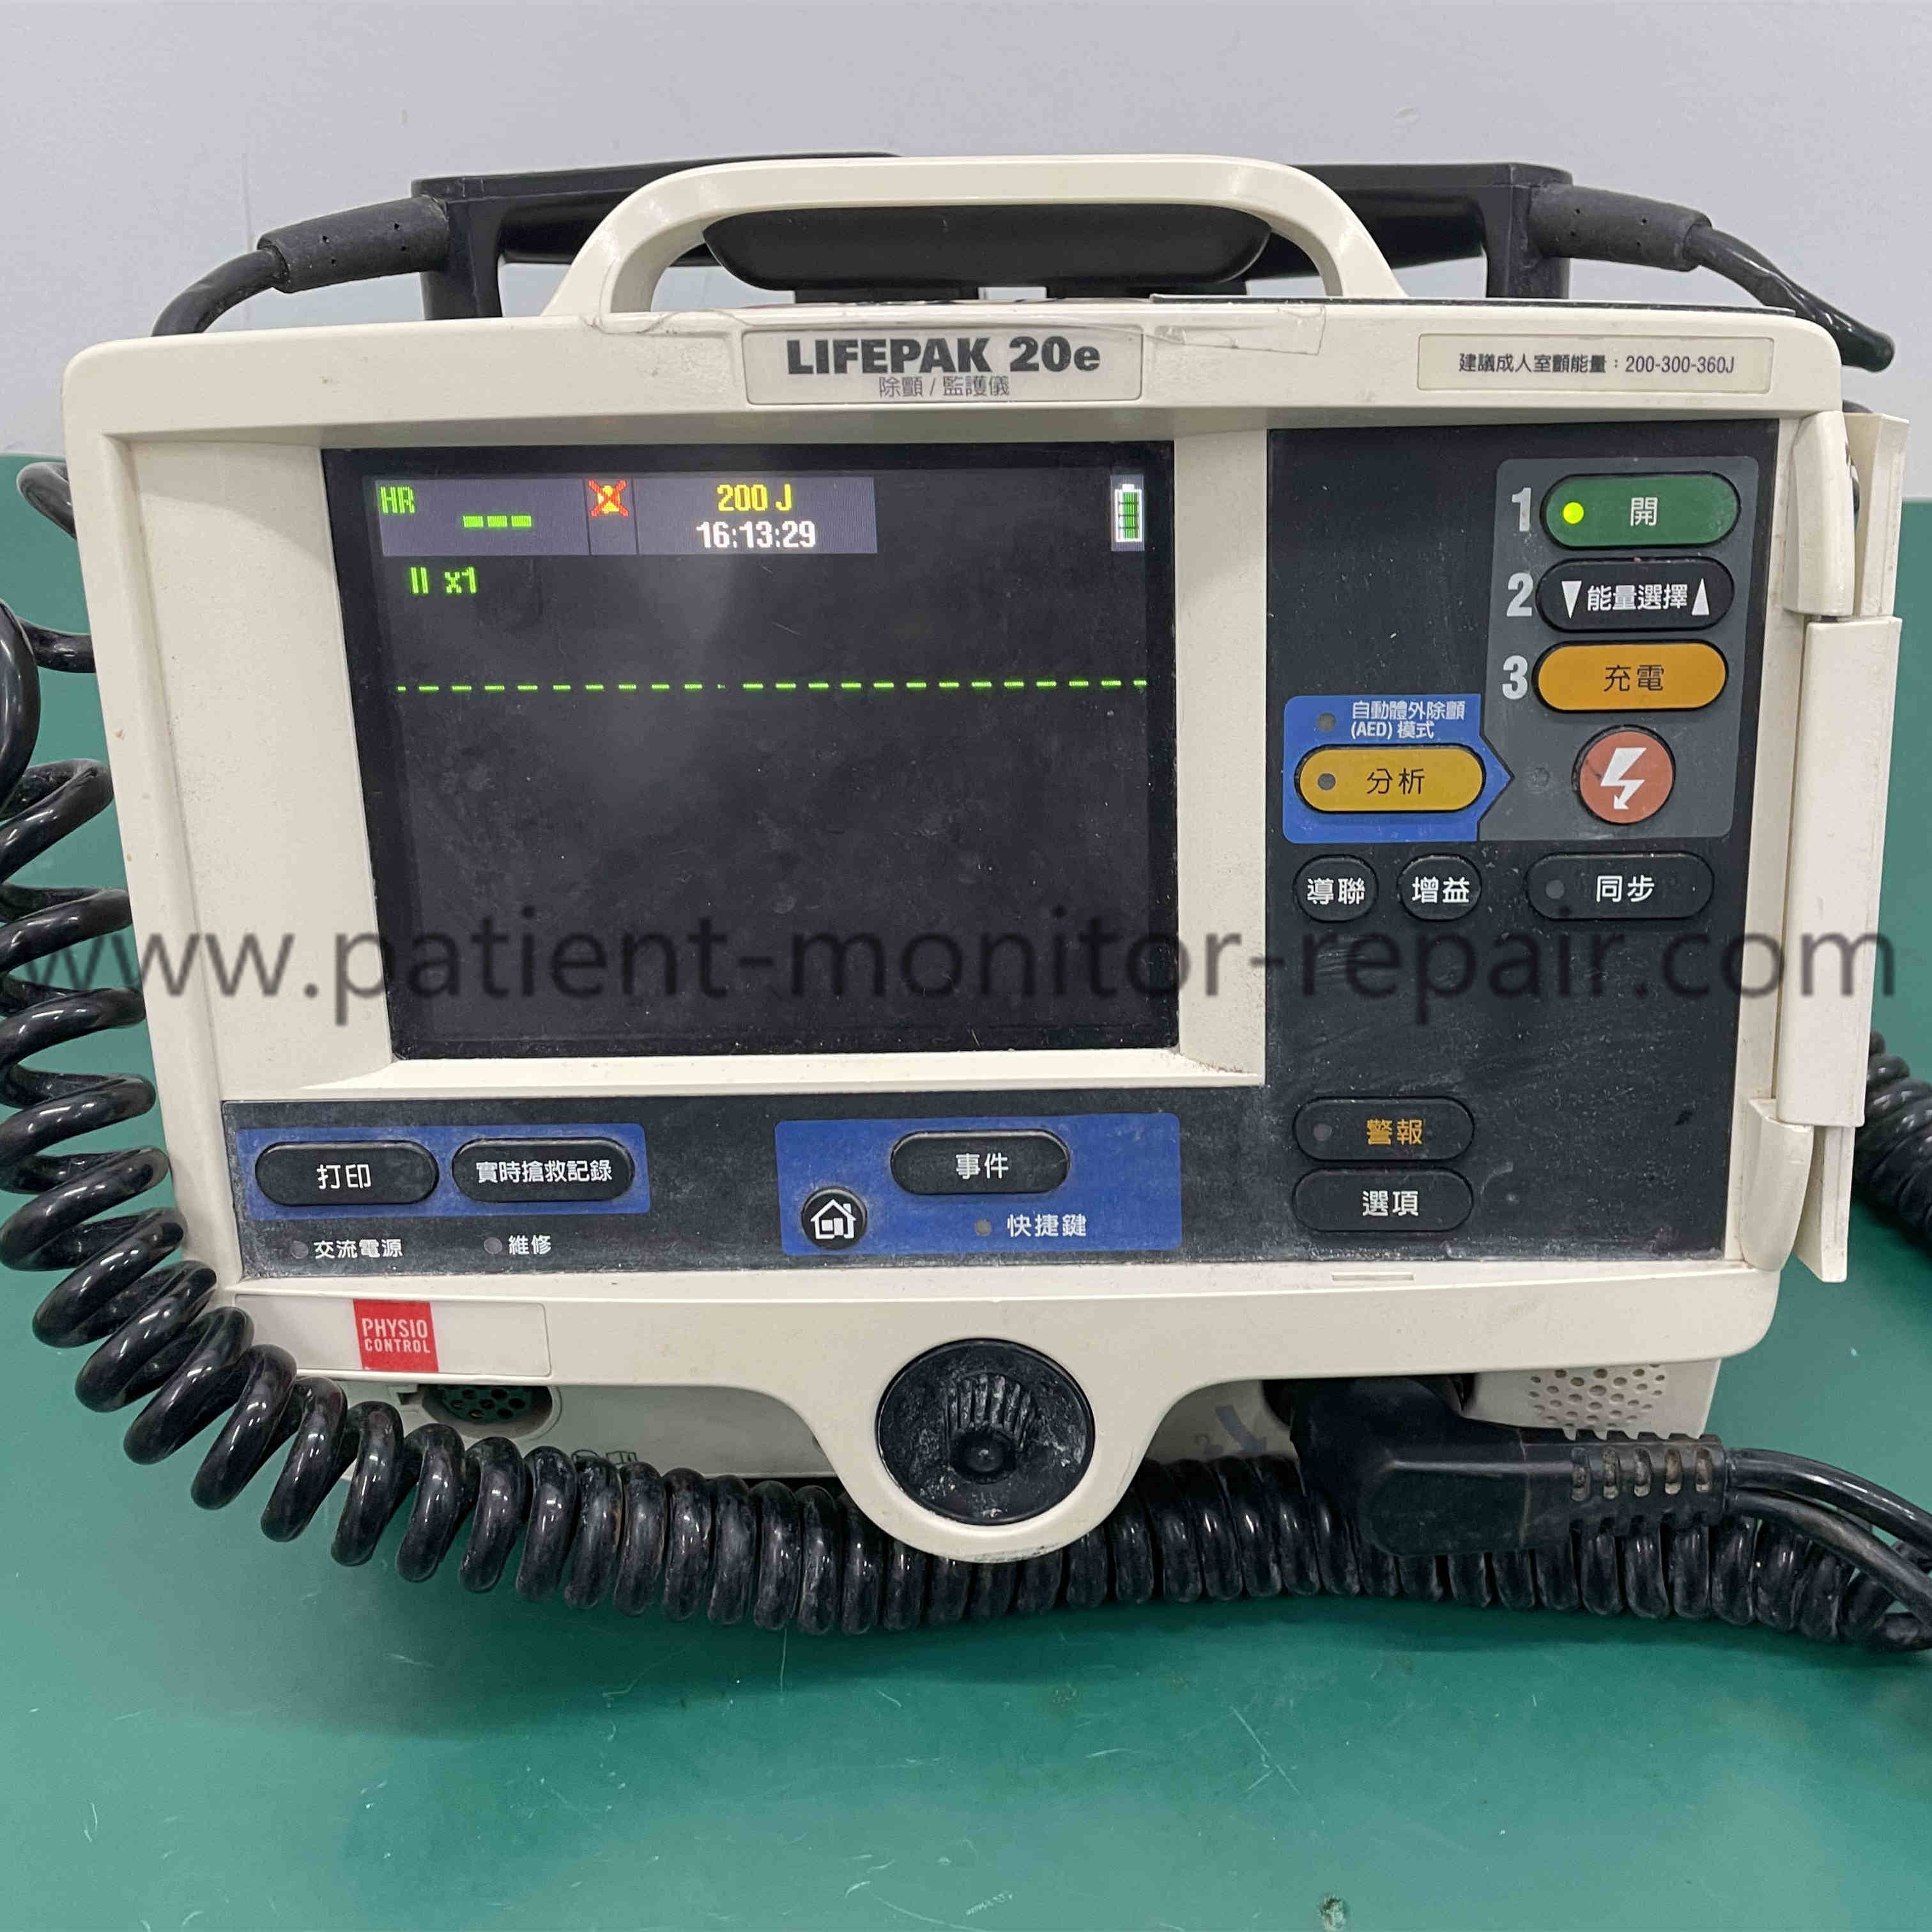 Medtronic Physio-Control Lifepak 20E LP20e Defibrillator/ Monitor REF: 99507-000058 3202487-352 Used